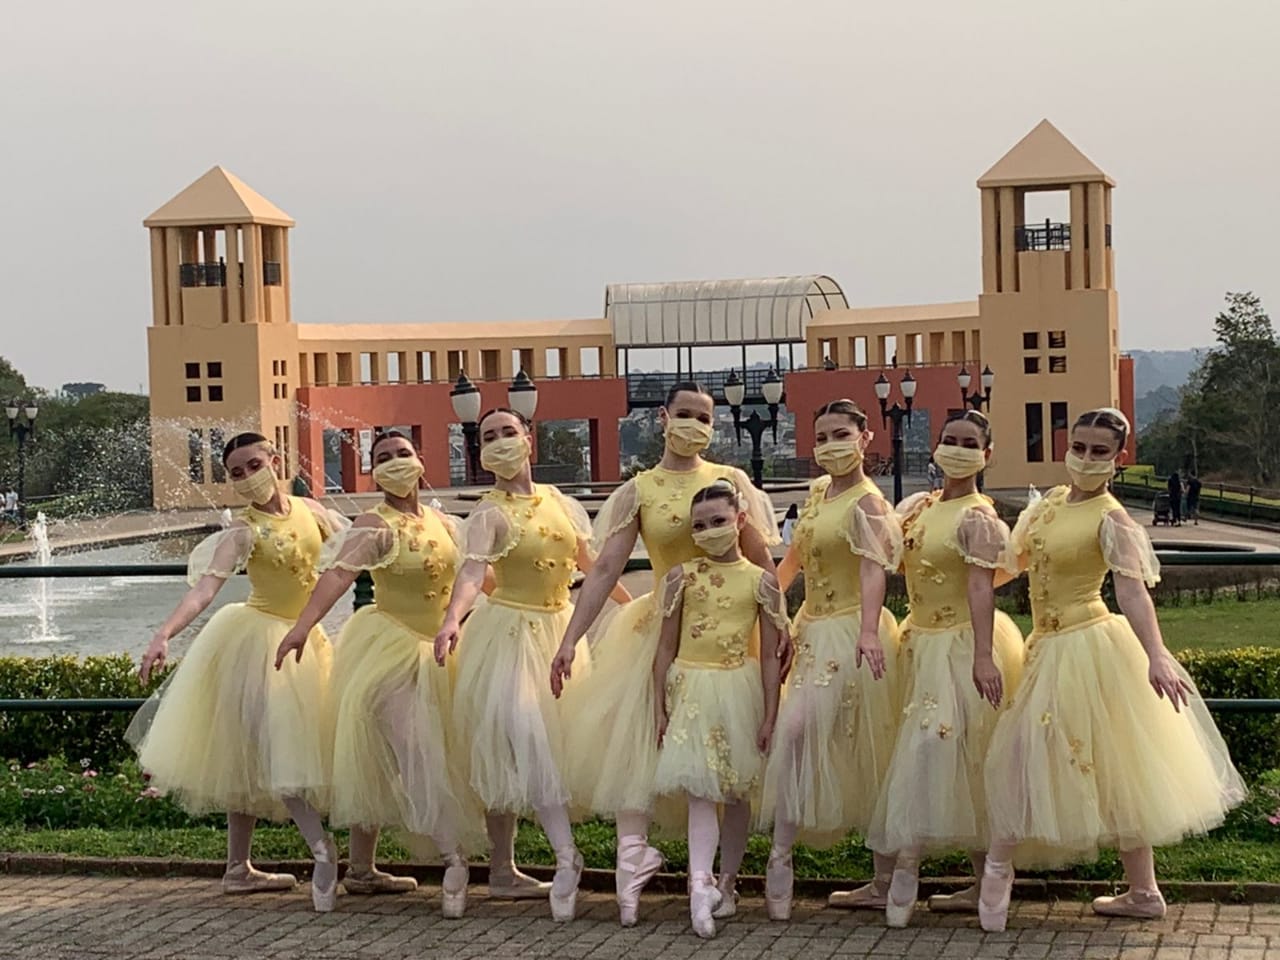  Escola Ballet Coppélia do Brasil realiza seletiva para bolsas integrais de estudos